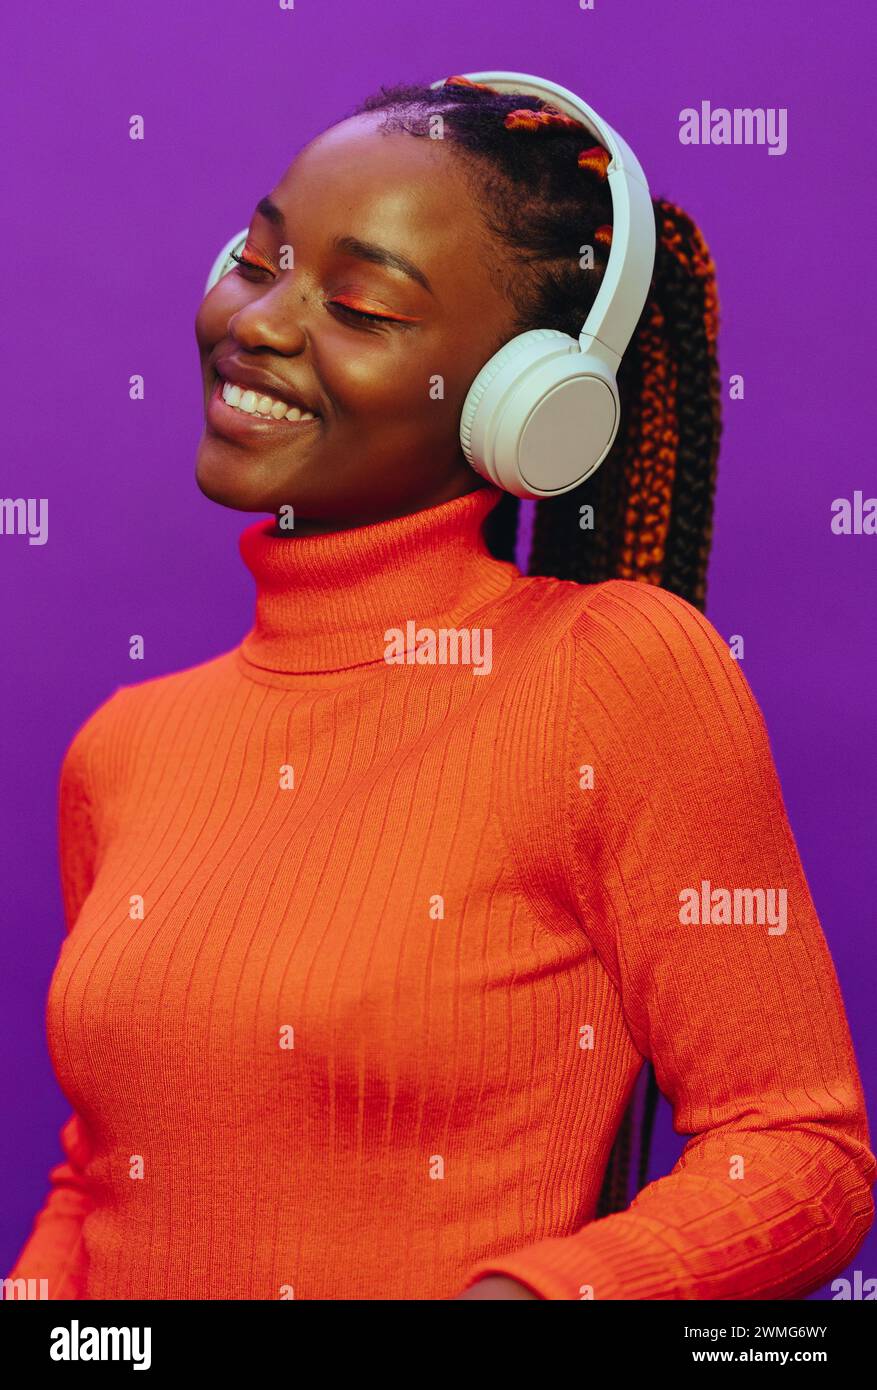 Femme heureuse avec des tresses bicolores colorées. Elle se tient sur un fond violet vif, portant des vêtements décontractés et des écouteurs. Son maquillage moderne a Banque D'Images